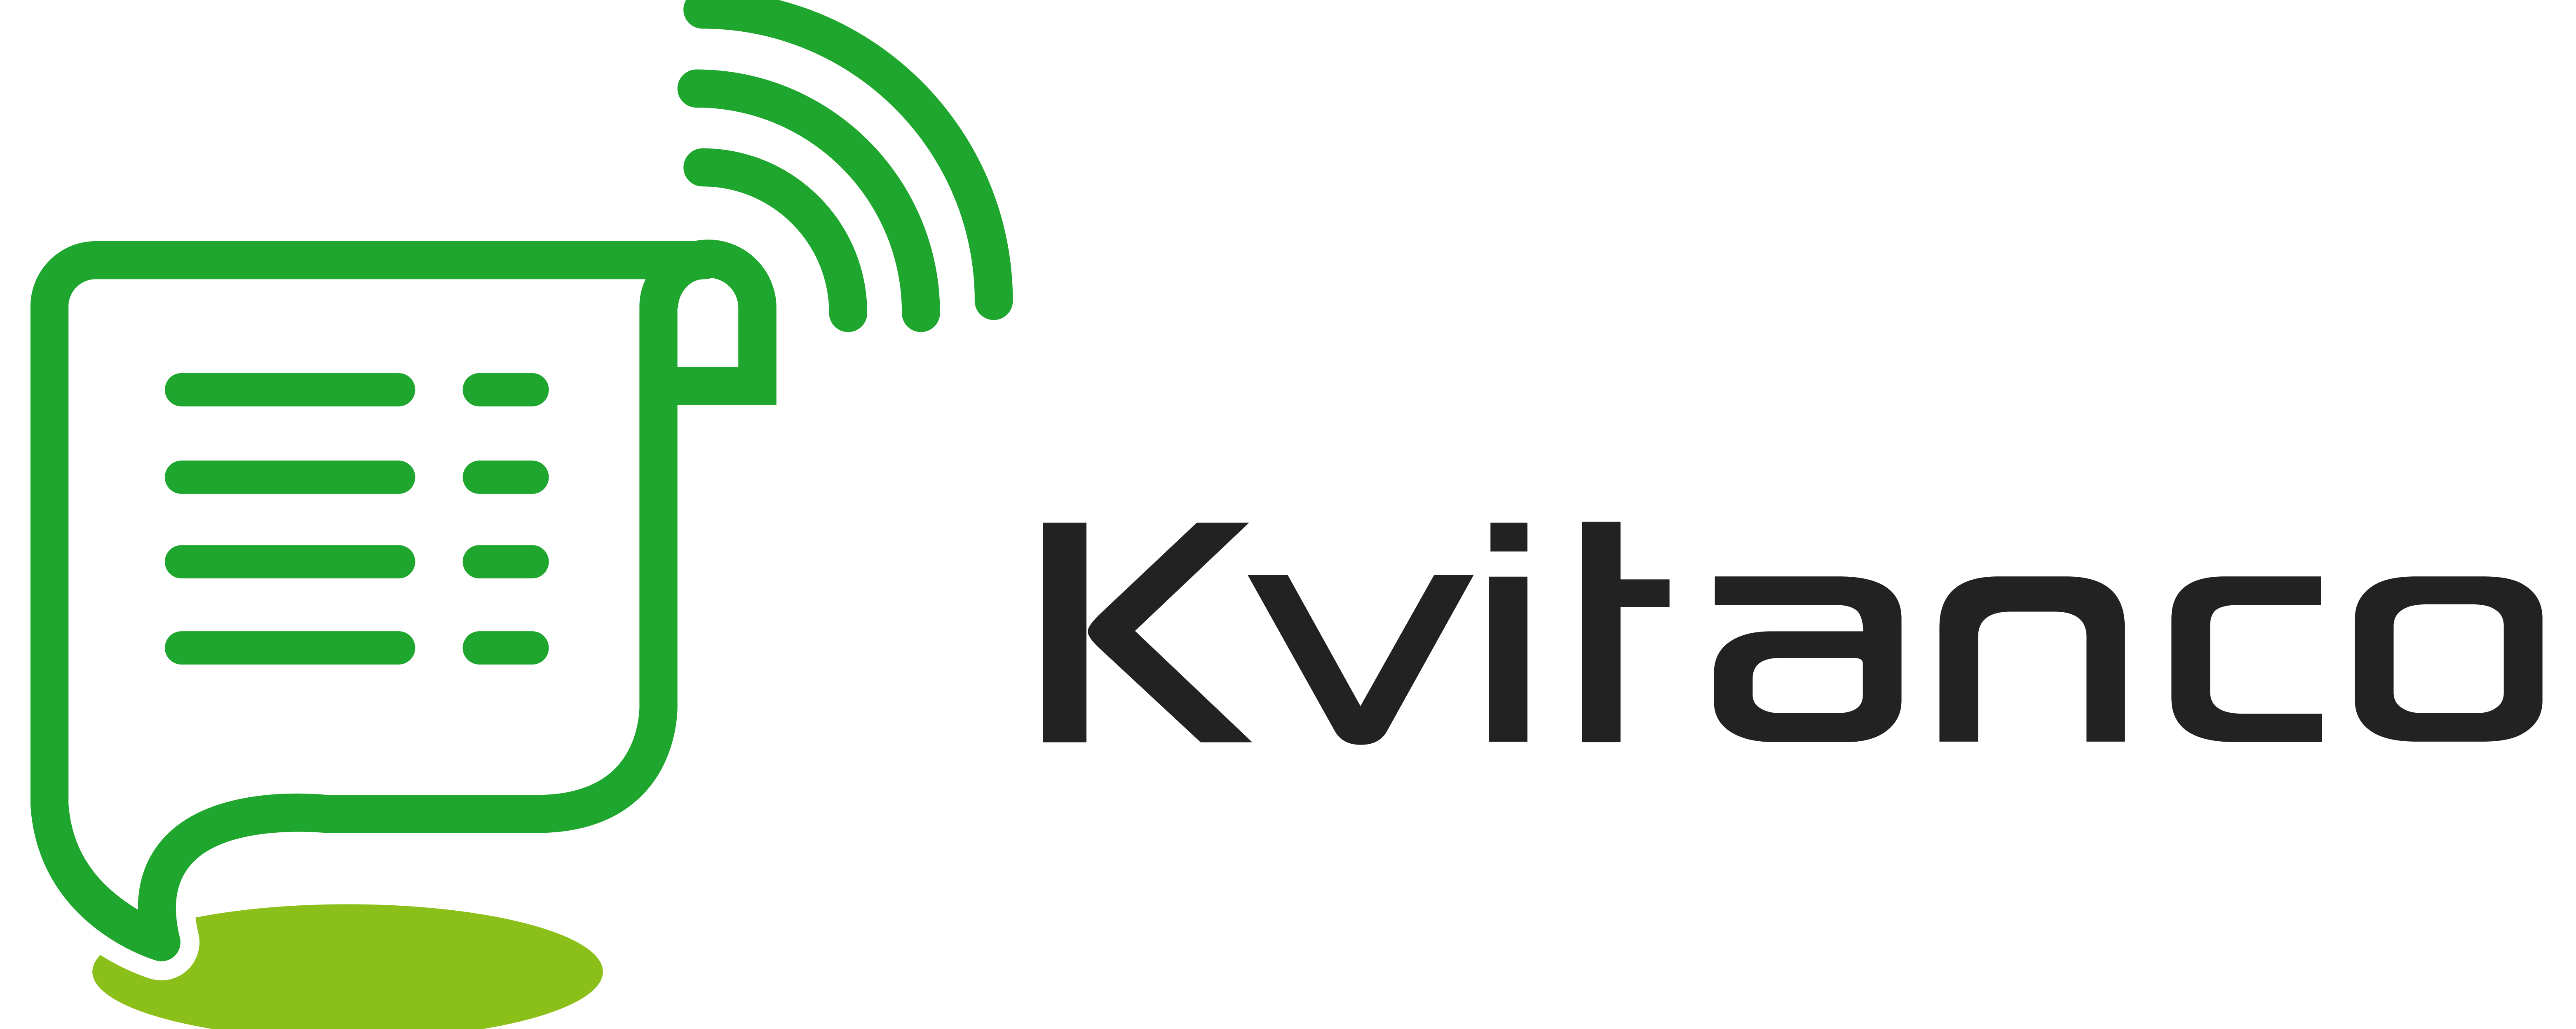 電子レシートをはじめとする店舗・中小企業DX支援サービス「kvitanco」